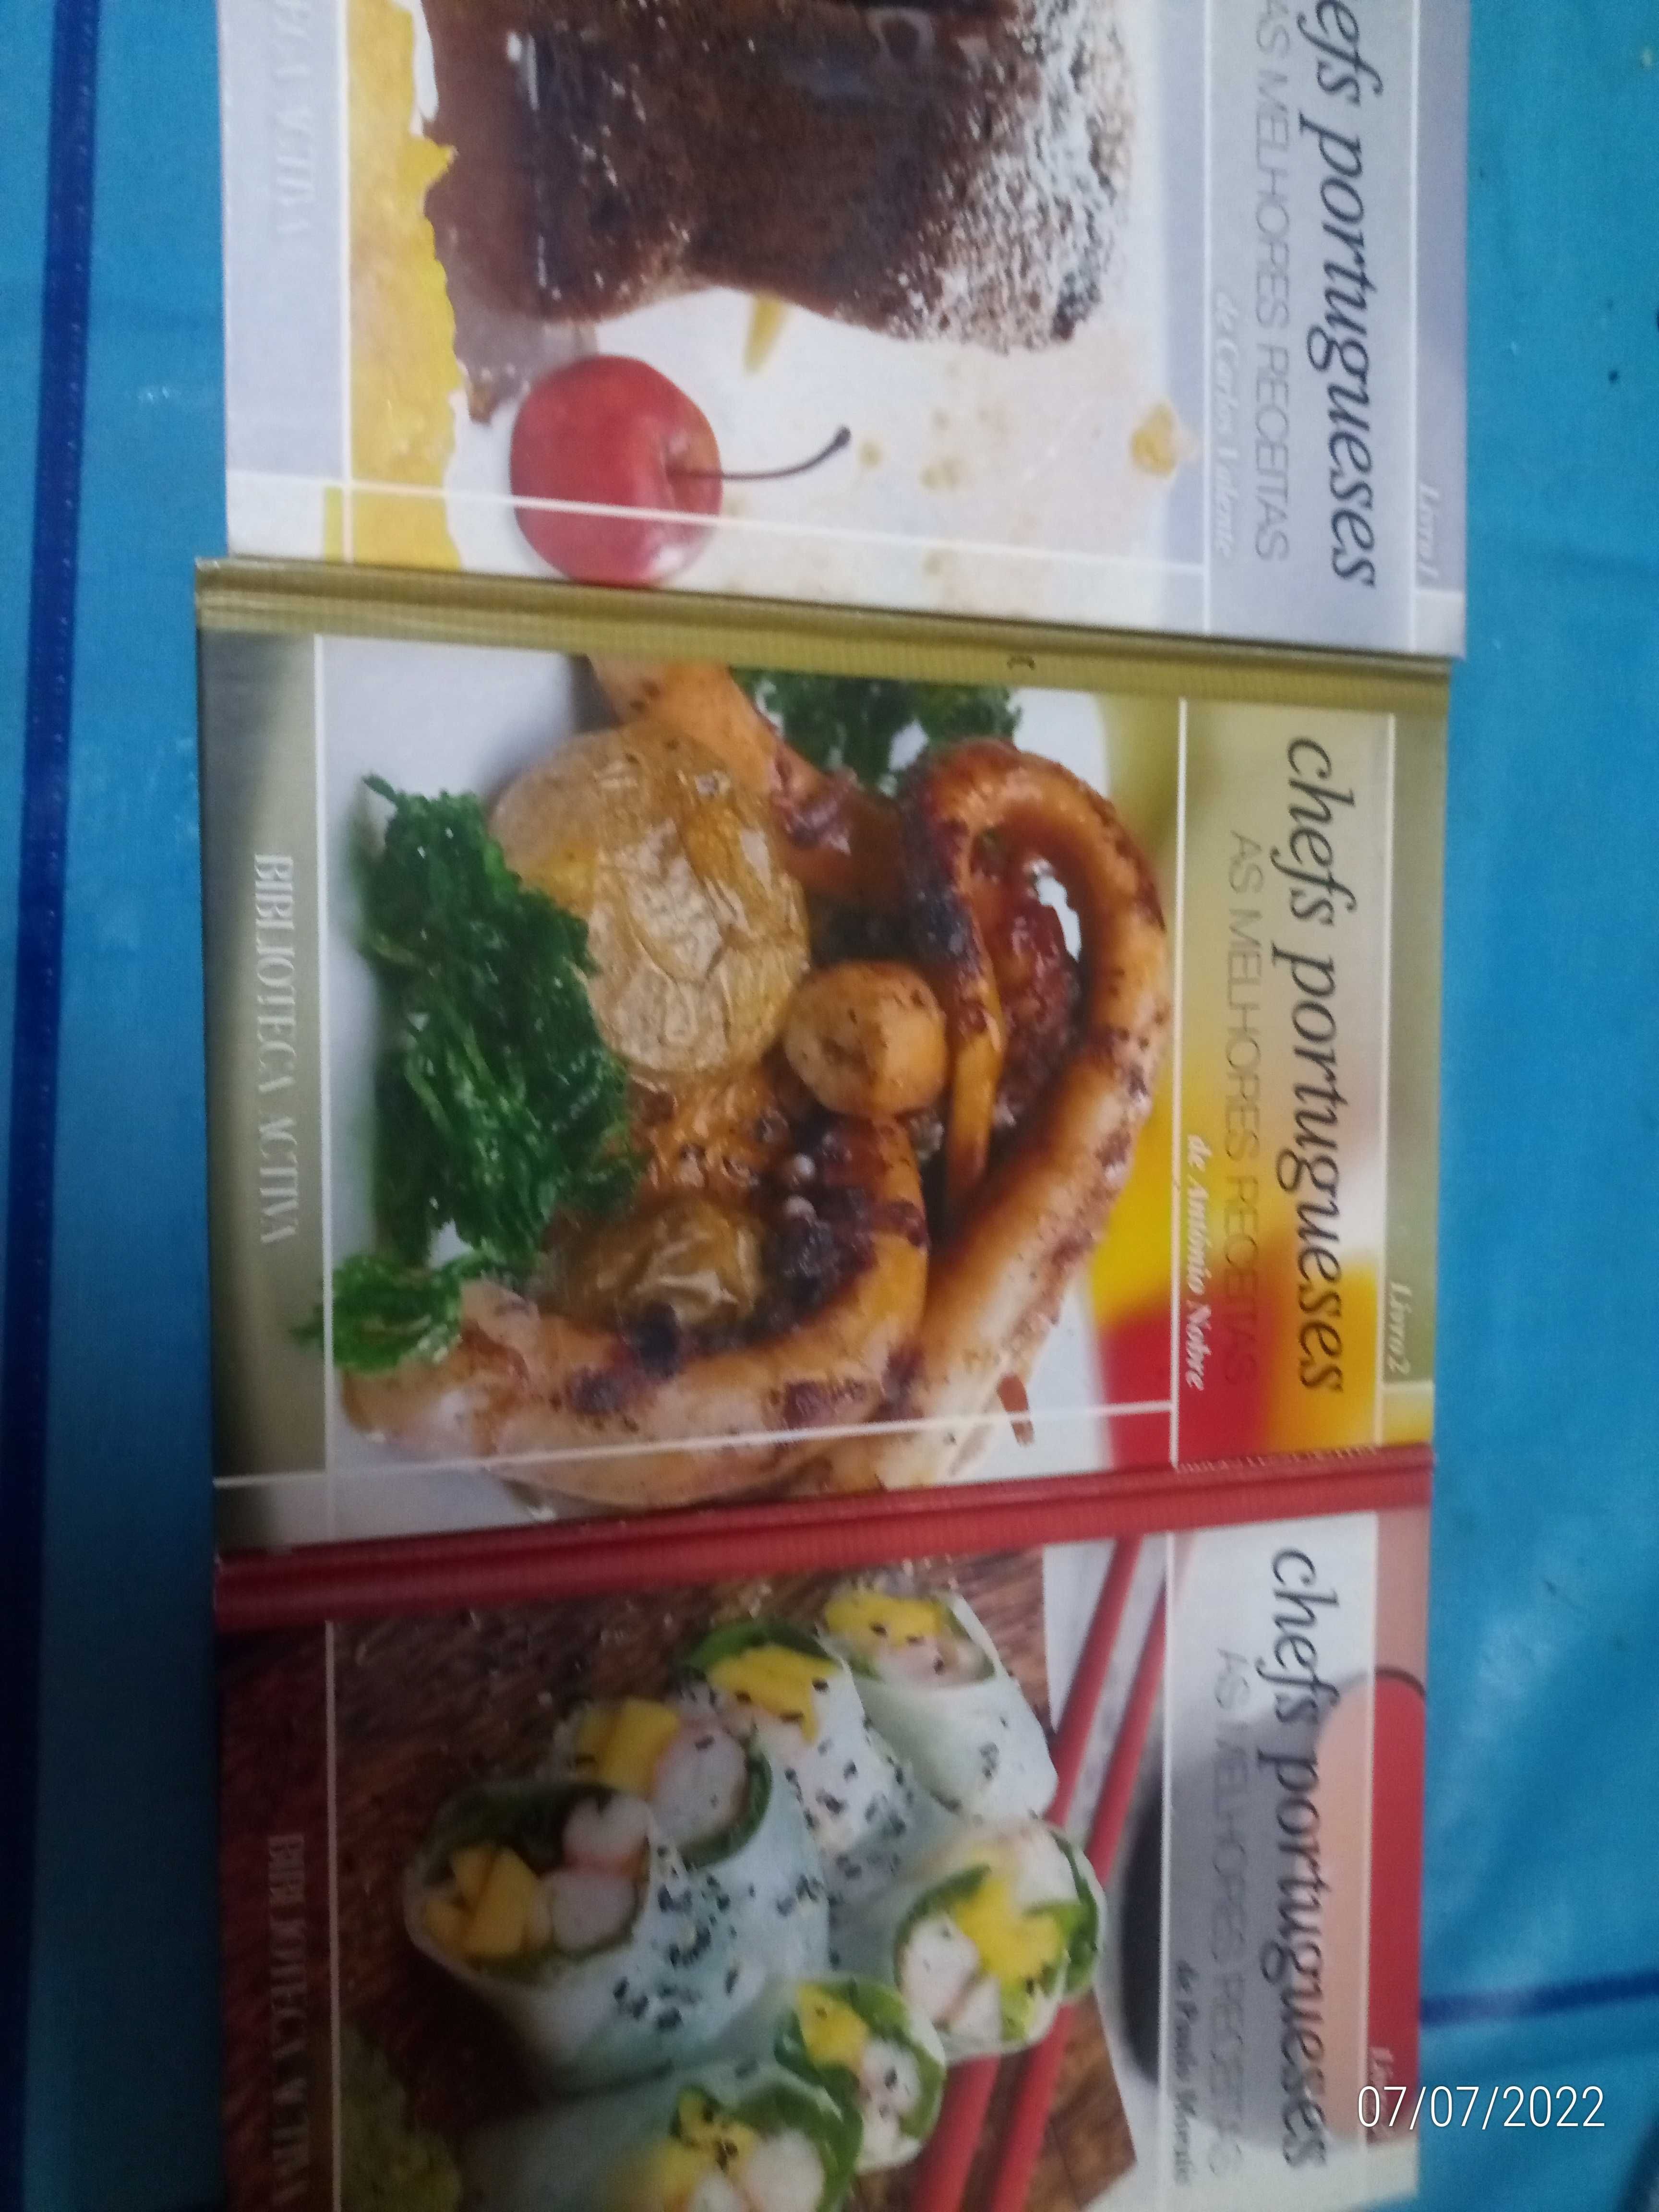 Colecao livros de chefs portugueses